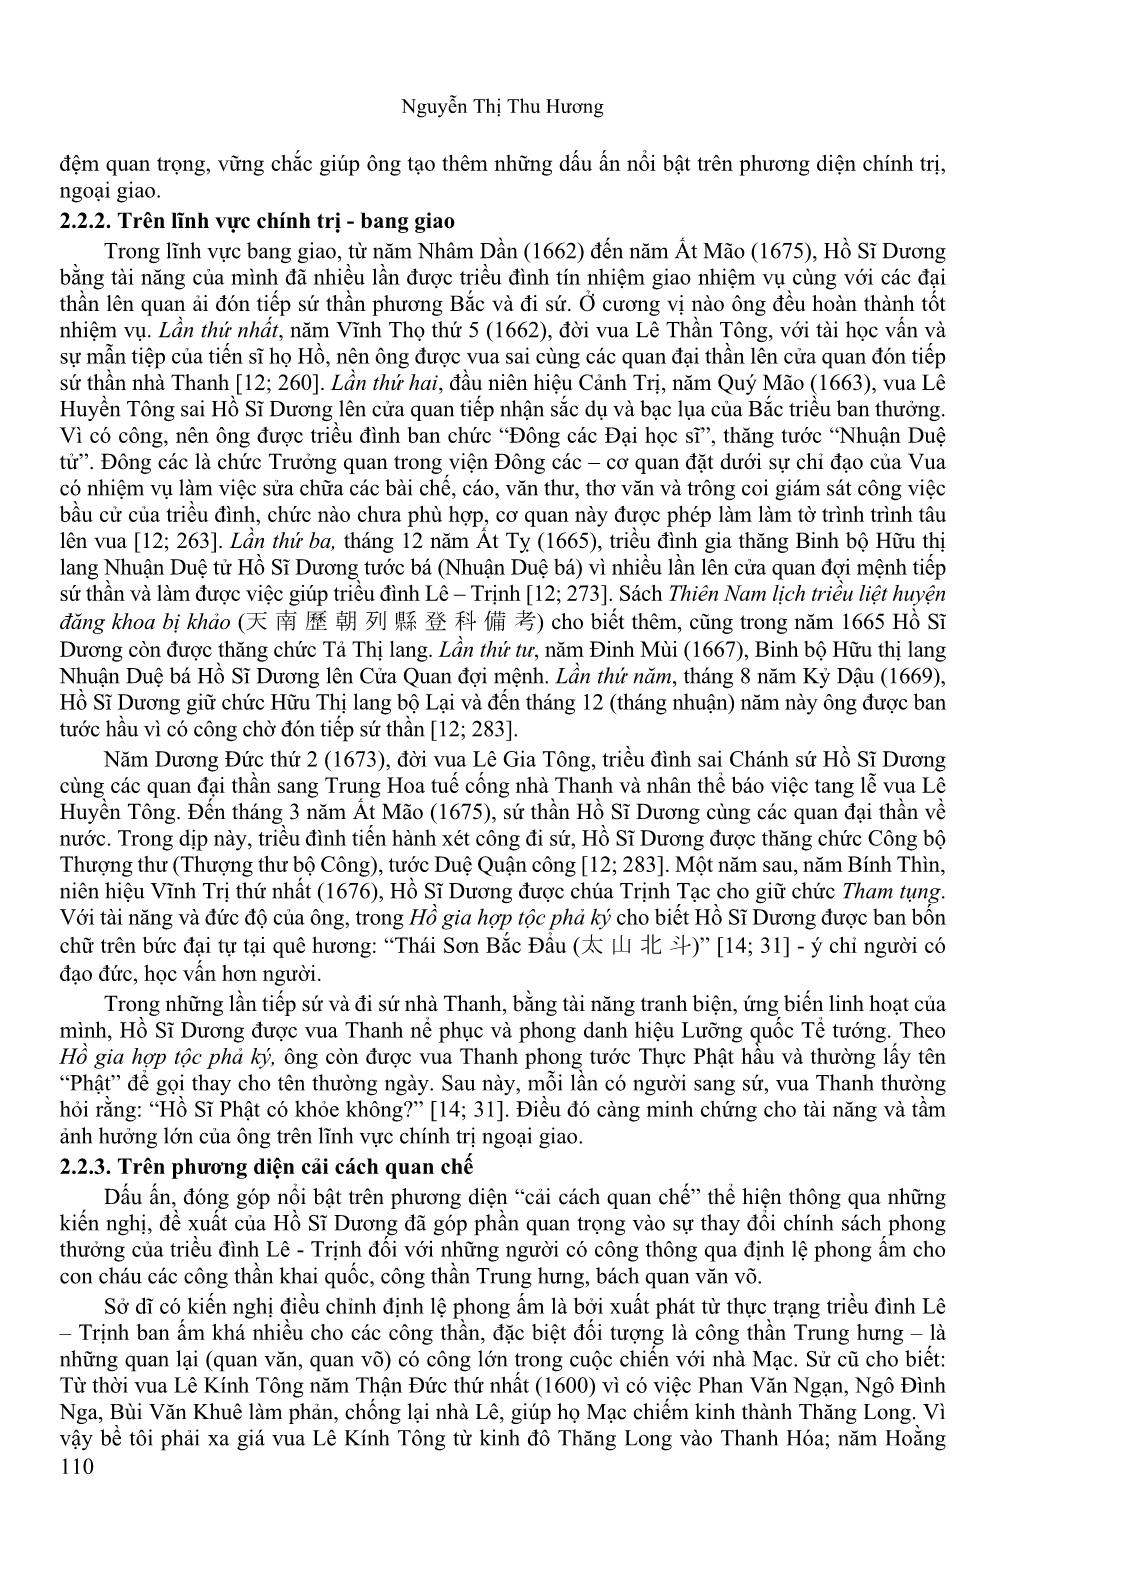 Tham tụng Hồ Sĩ Dương với những đóng góp nổi bật trong lịch sử Đại Việt thế kỉ XVII trang 4